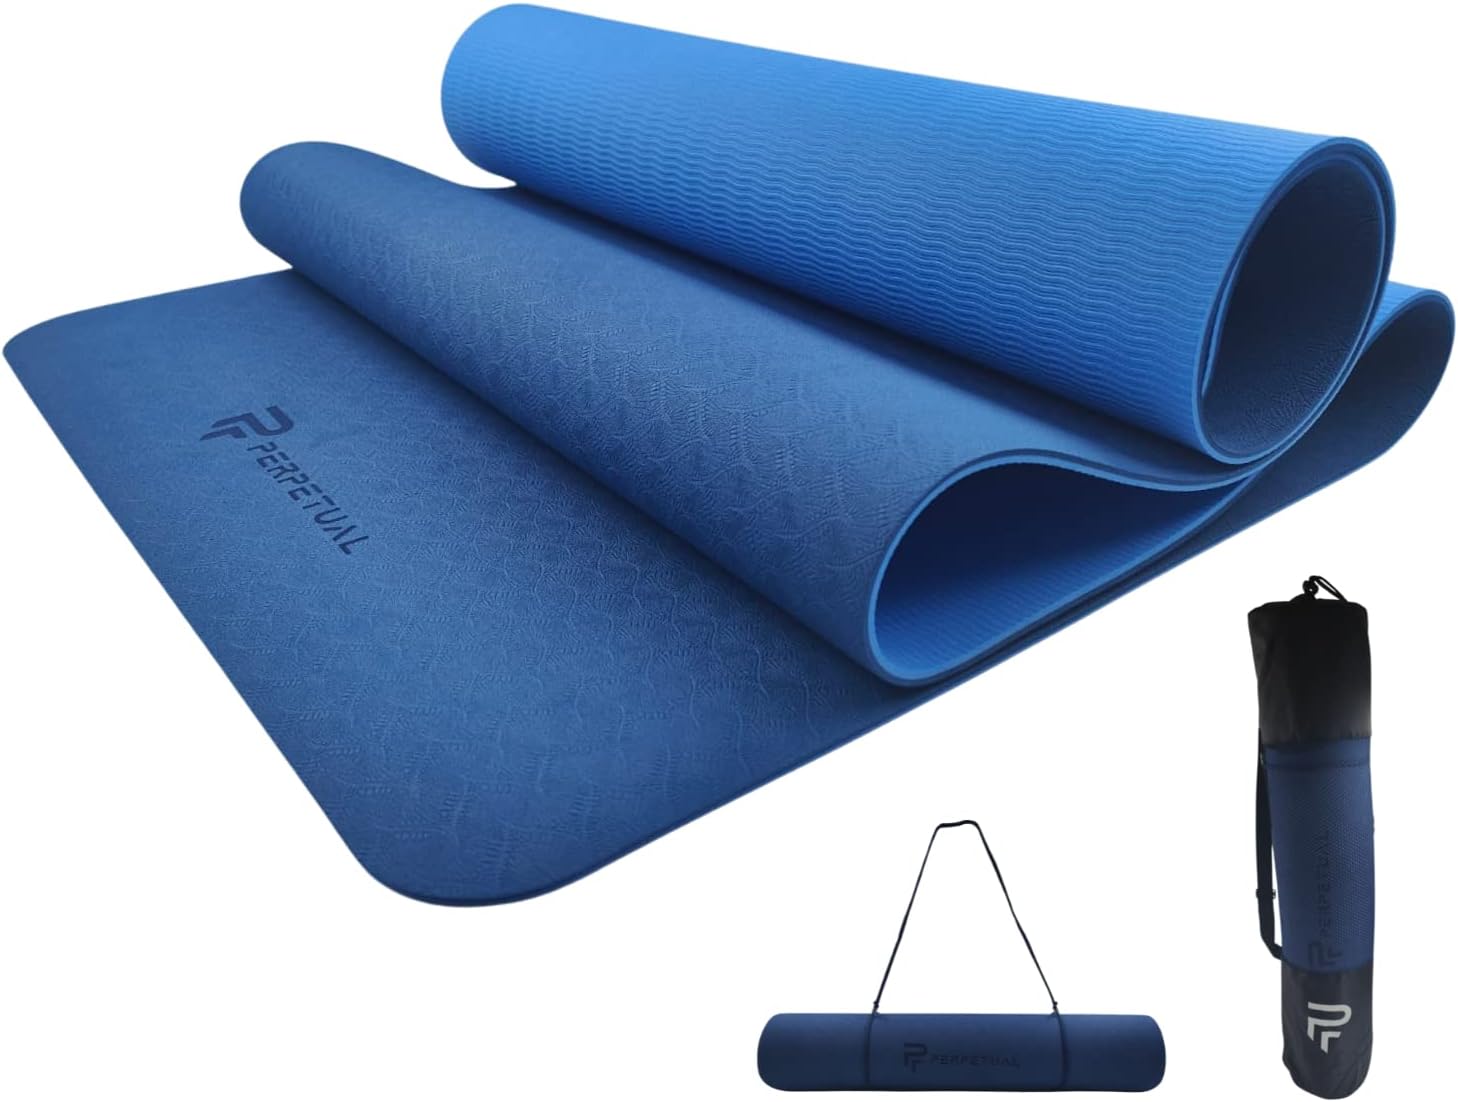 Esterilla Perpetual De Yoga Y Pilates Antideslizante De 6mm Con Correa Y Bolsa De Transporte - azul - 